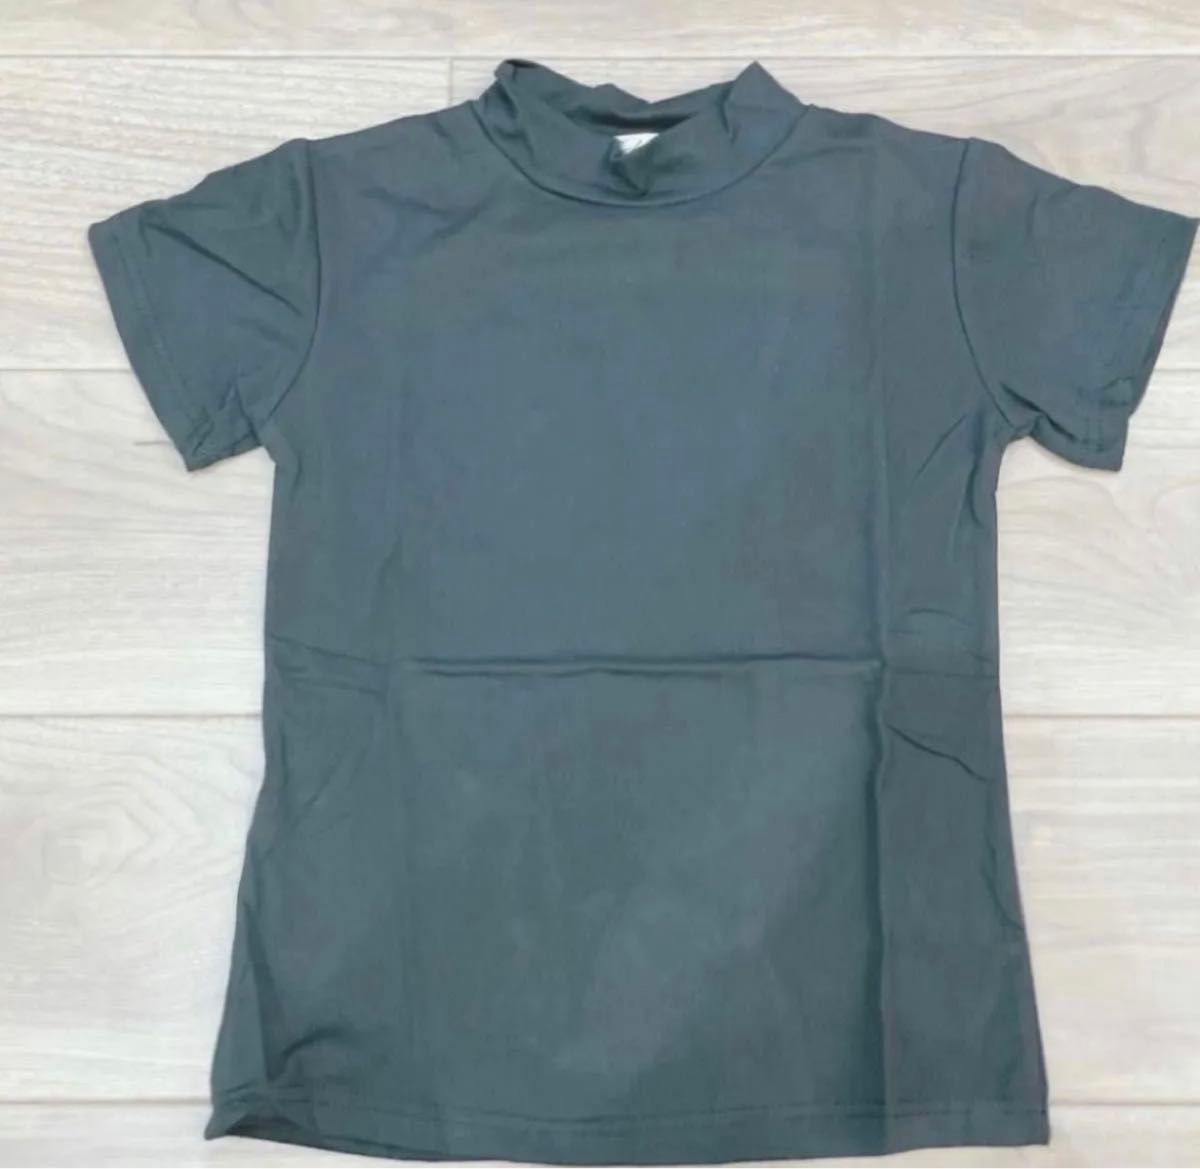 【再入荷】2XL  ブラック  Tシャツ 半袖 スタンドカラー モックネック カットソー 可愛い シンプル 日除け 無地 人気 